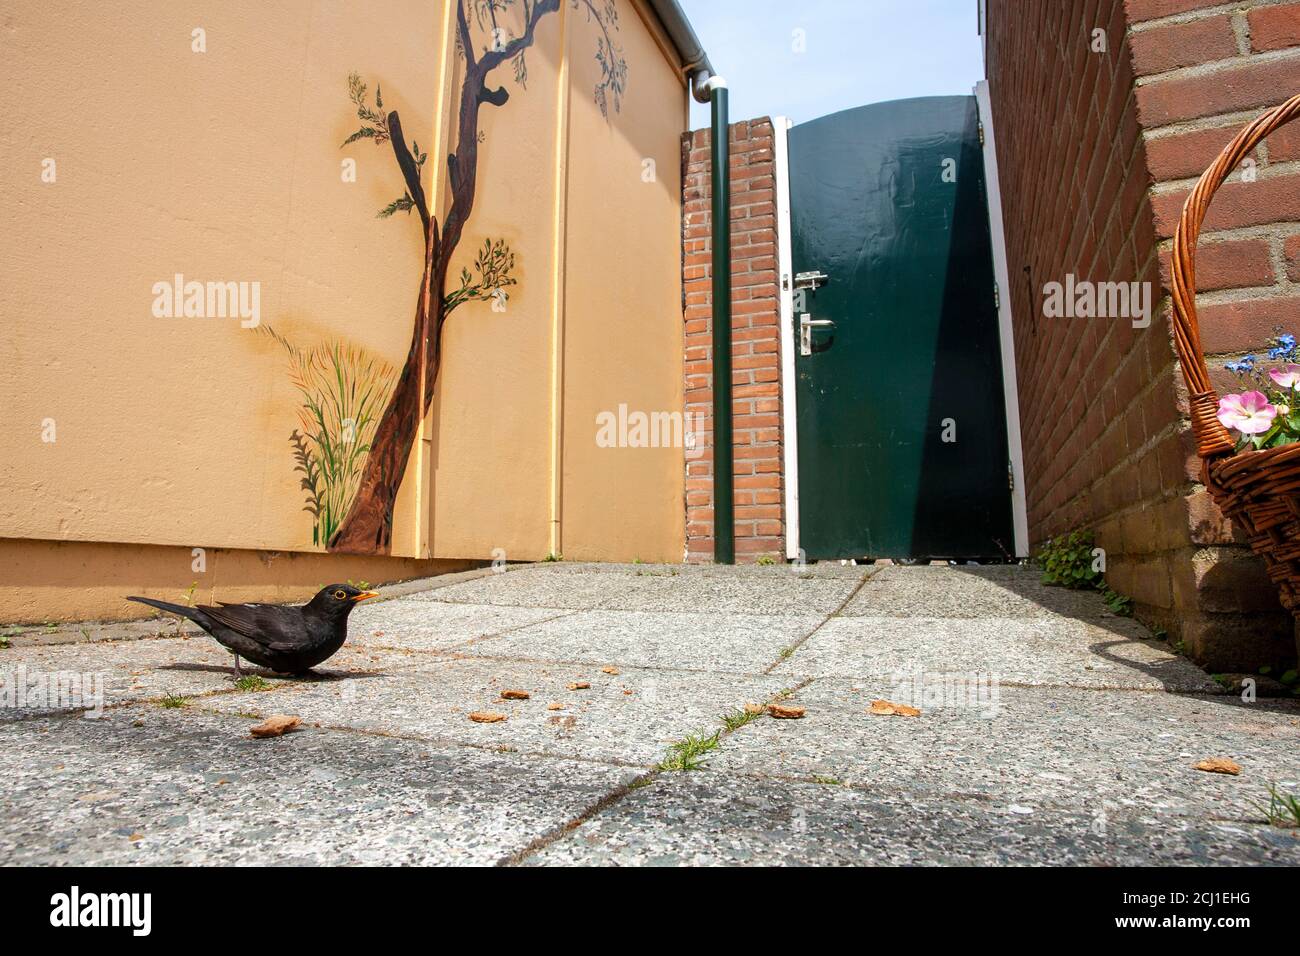 blackbird (Turdus merula), Male looking for food on the ground in an urban garden, Netherlands, Katwijk aan Zee Stock Photo